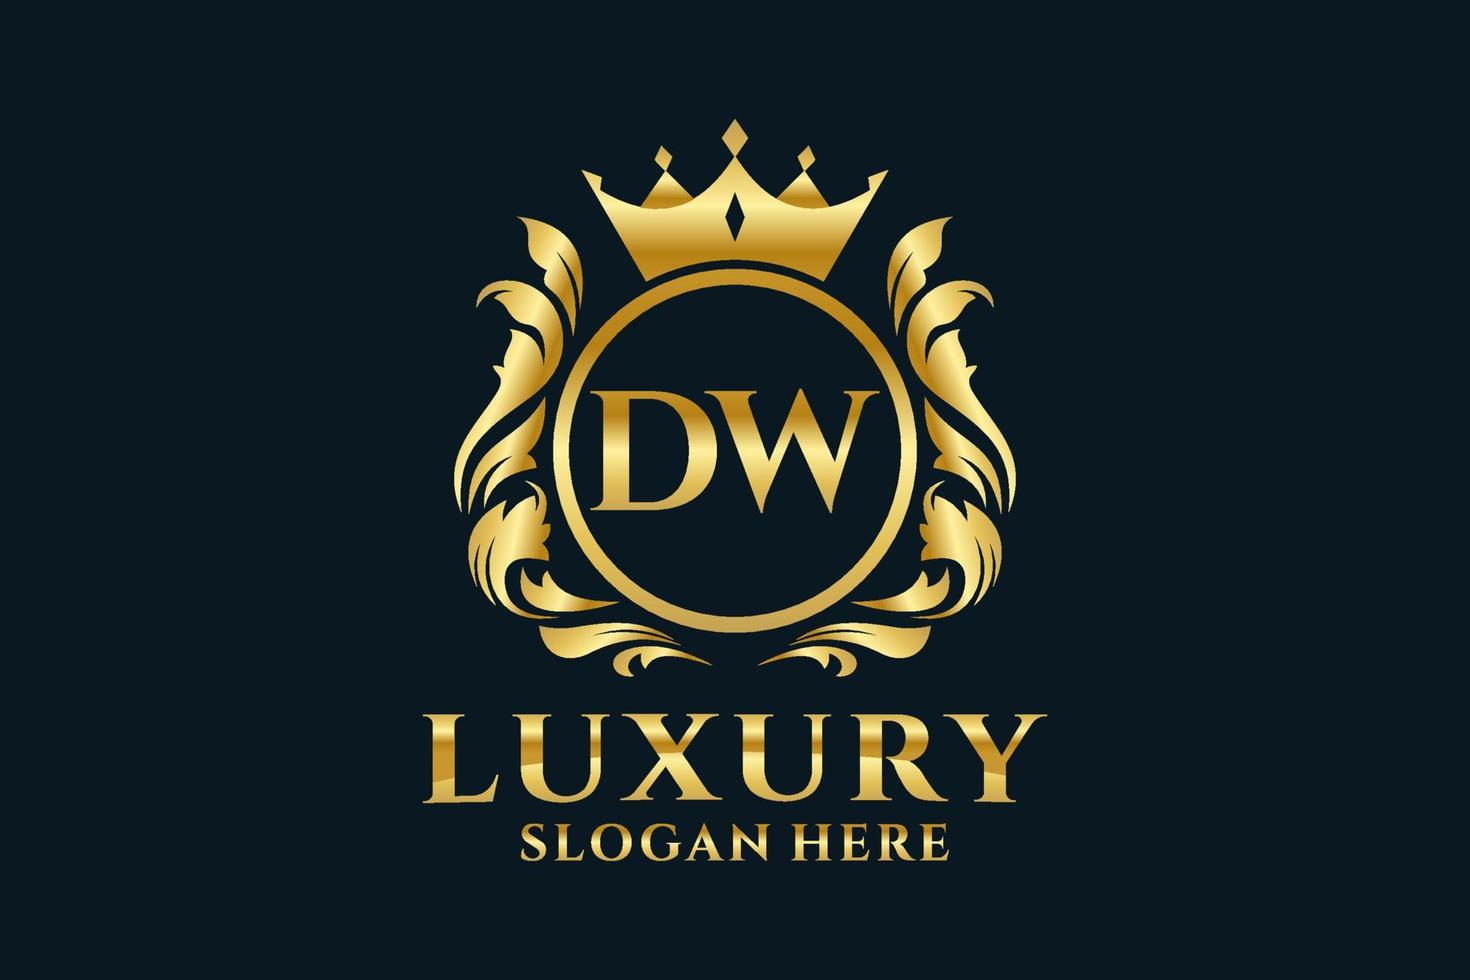 Royal Luxury Logo-Vorlage mit anfänglichem dw-Buchstaben in Vektorgrafiken für luxuriöse Branding-Projekte und andere Vektorillustrationen. vektor